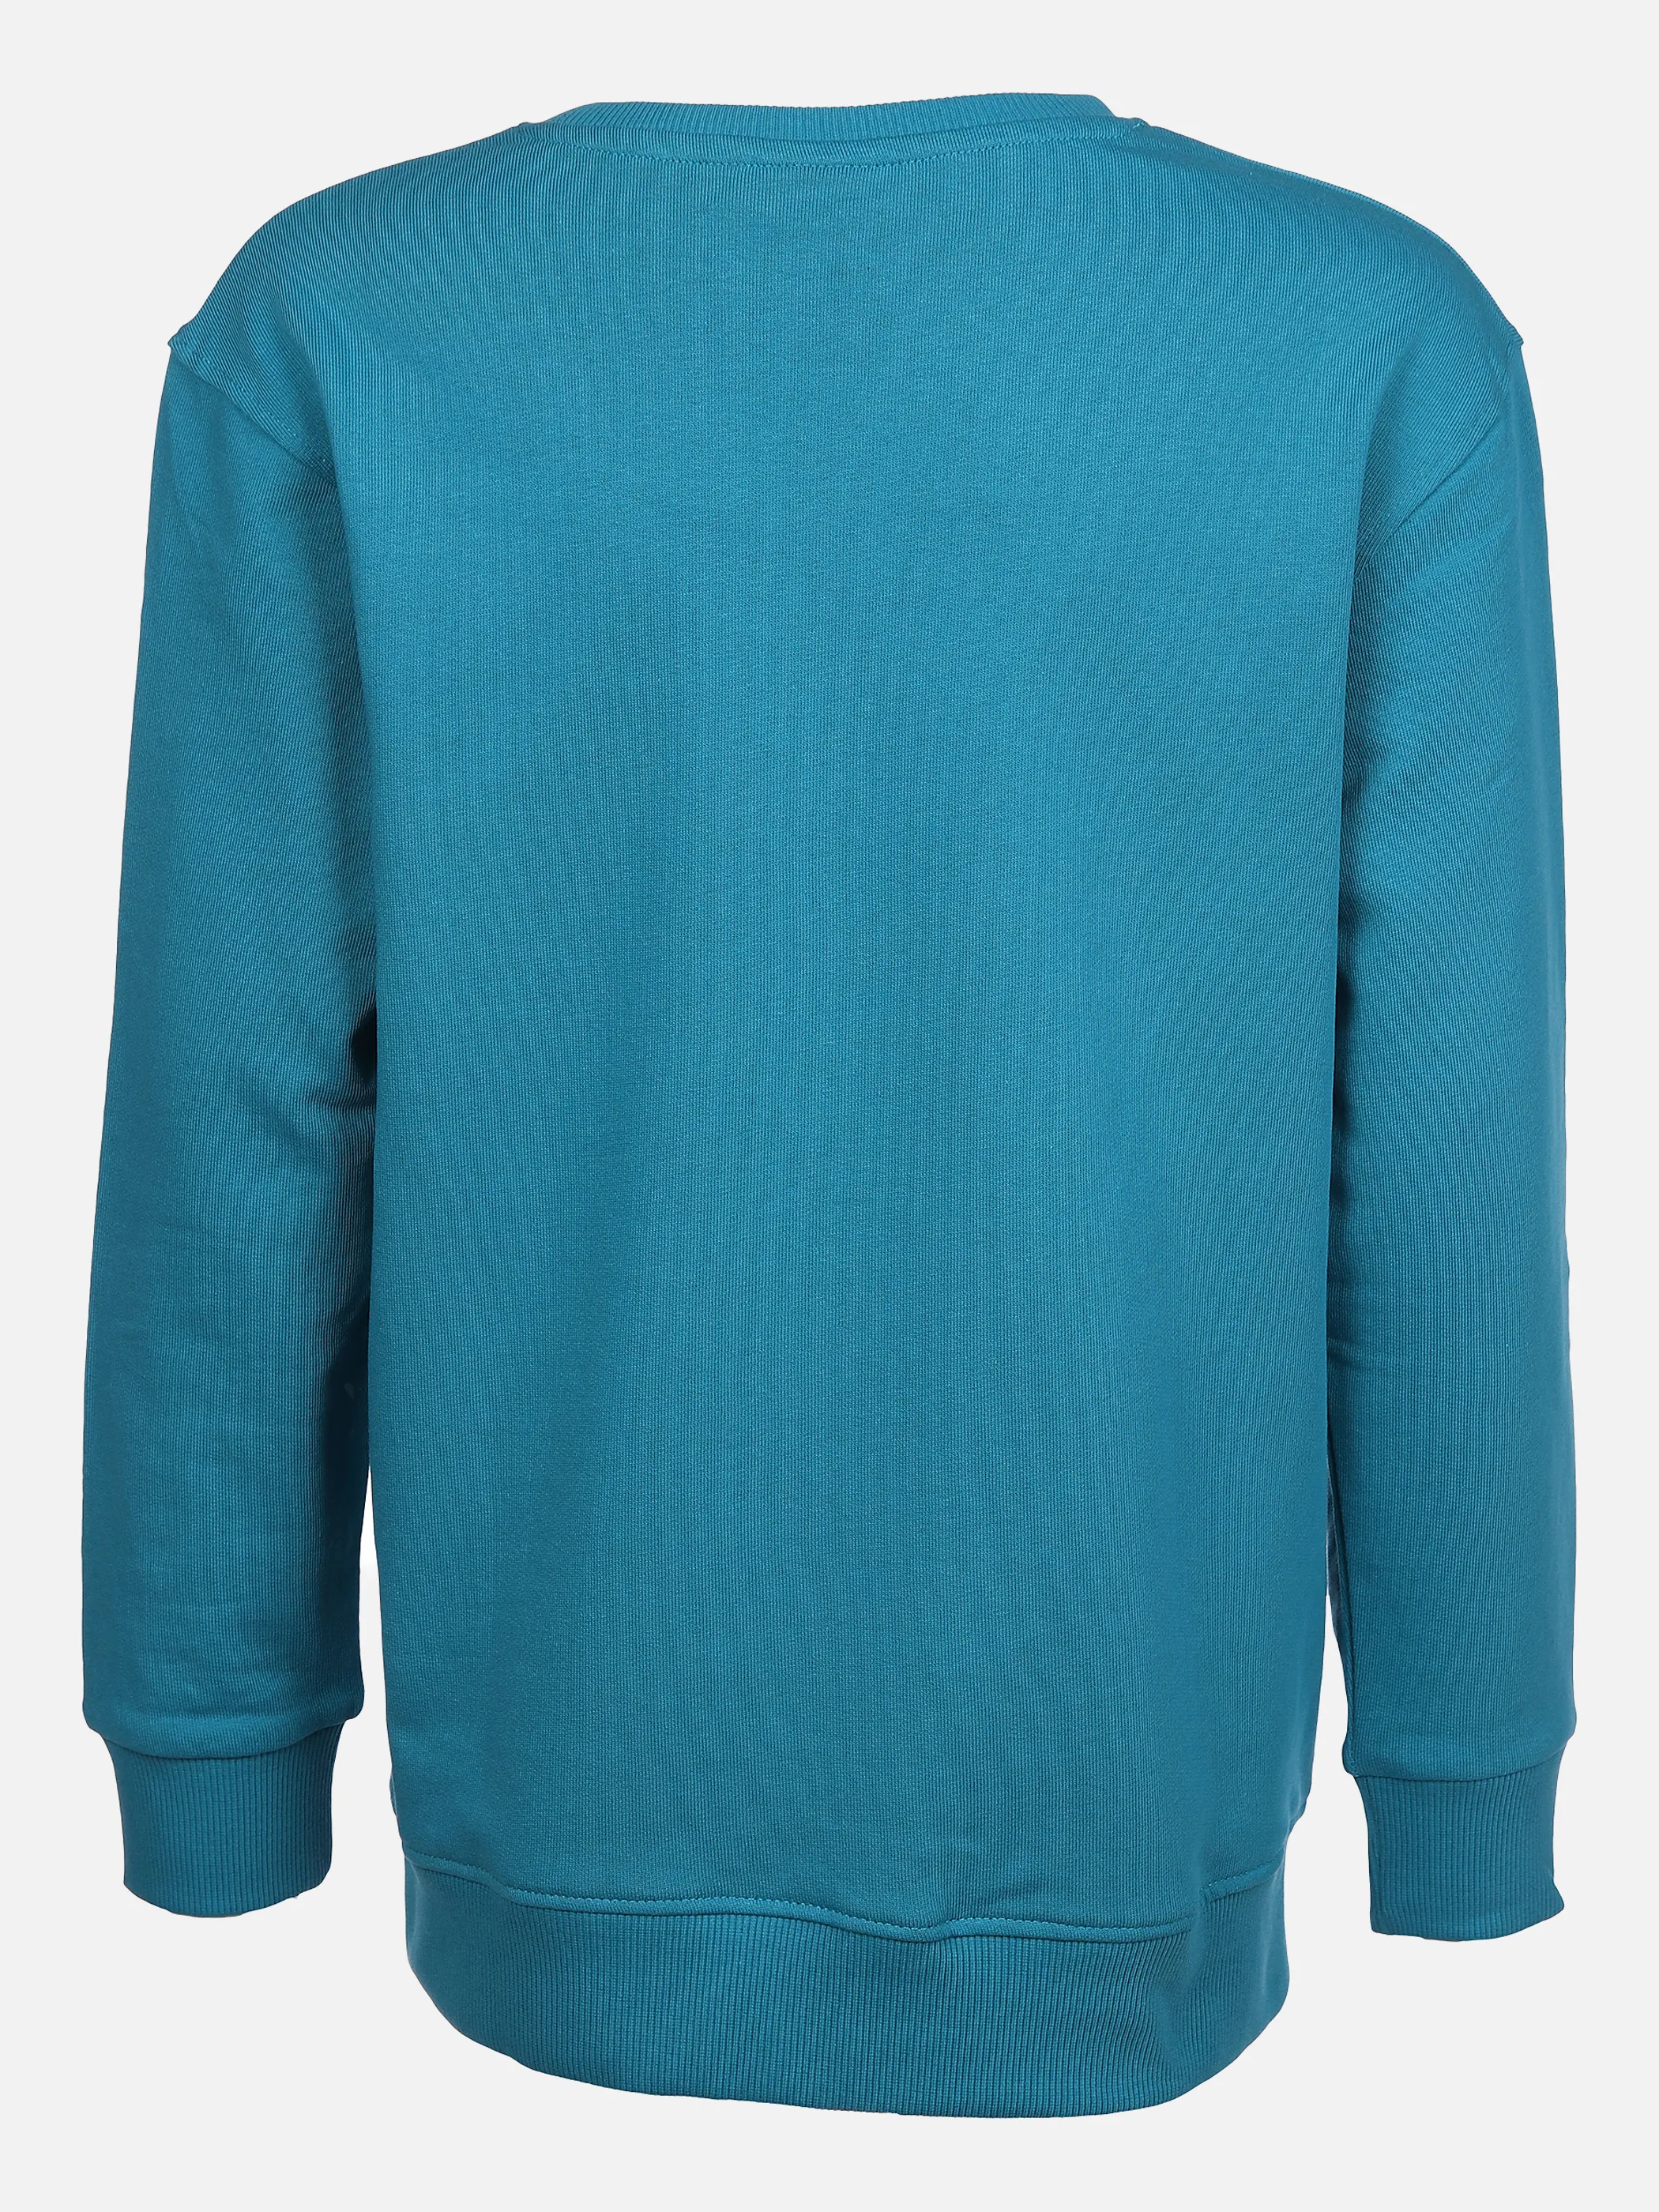 Stop + Go TB Sweatshirt Basic in h.grau Blau 860582 DUNKELBLAU 2